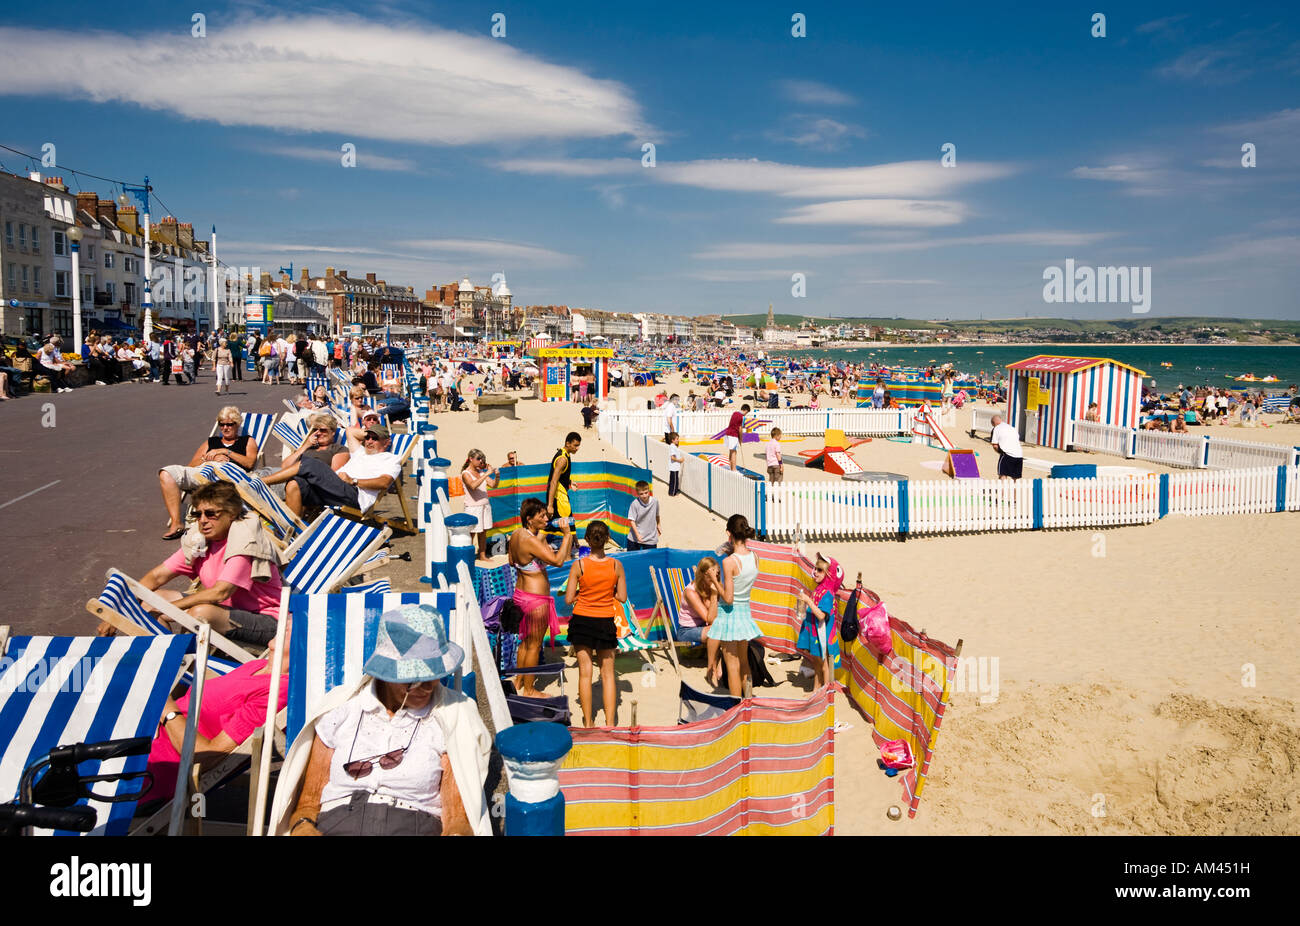 Les gens à une station traditionnelle britannique en été plage de Weymouth, Dorset, UK - Esplanade et plage Banque D'Images